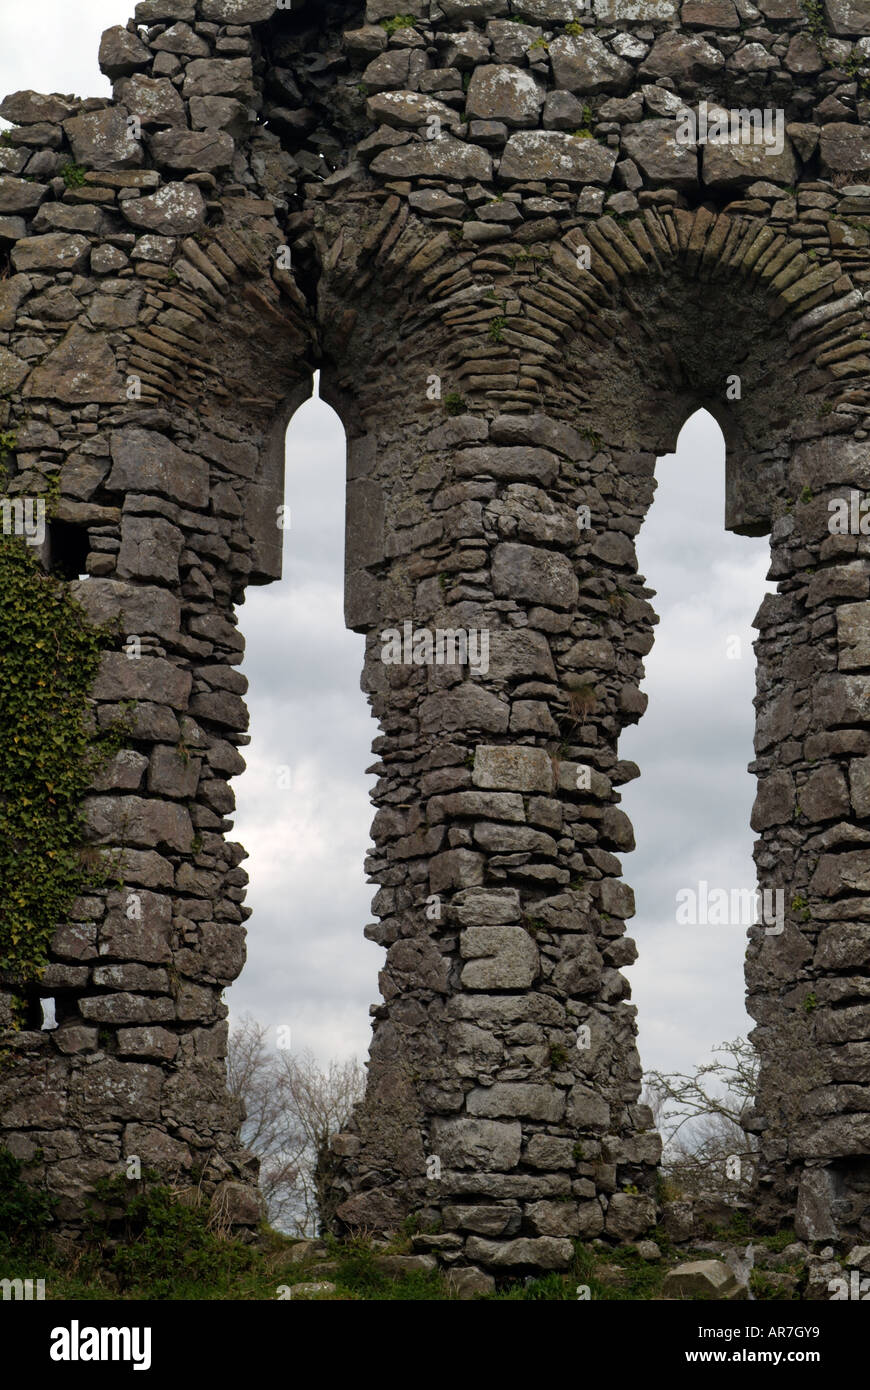 La maçonnerie en pierre sèche de deux fenêtres en forme d'ovale dans une église en ruine l'Irlande Banque D'Images